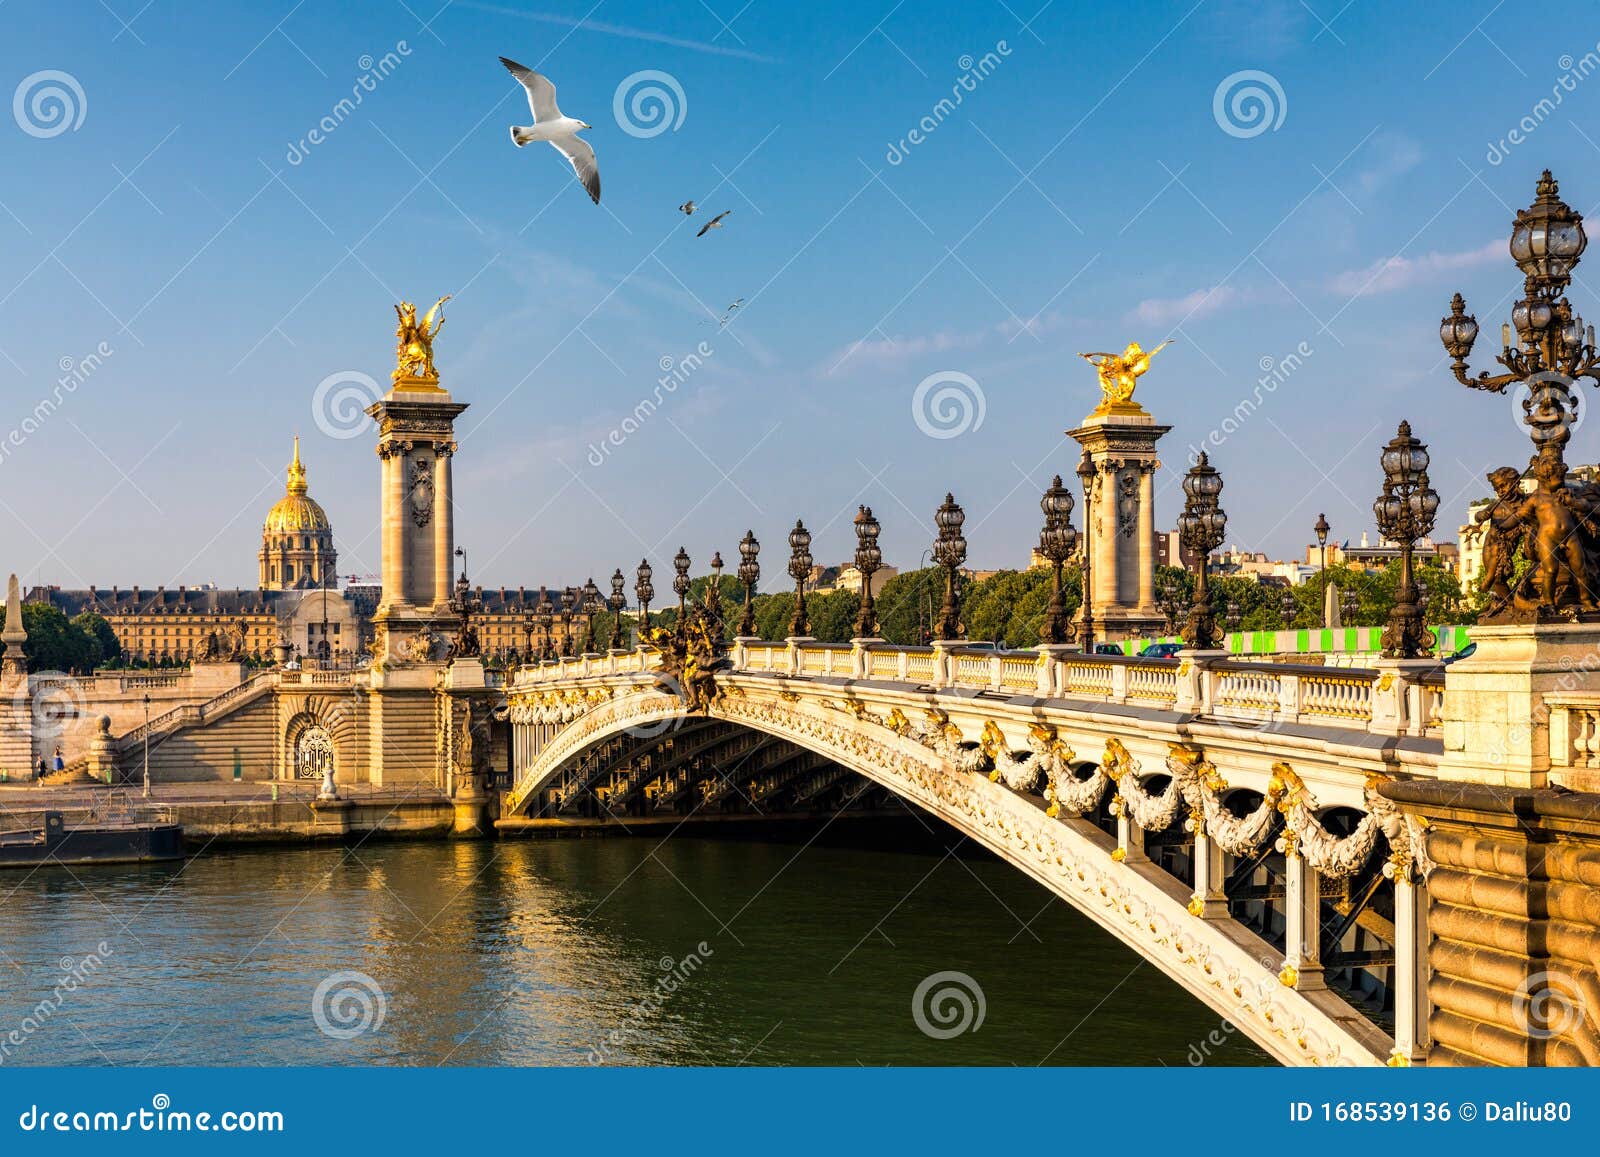 Γέφυρα του Πόντ Αλεξάντρ Γ΄ στον ποταμό Σηκουάνα το ηλιόλουστο καλοκαιρινό  πρωινό Διακόσμηση γέφυρας με διακοσμητικές λάμπες Art Στοκ Εικόνες - εικόνα  από alfredo, cityscape: 168539136